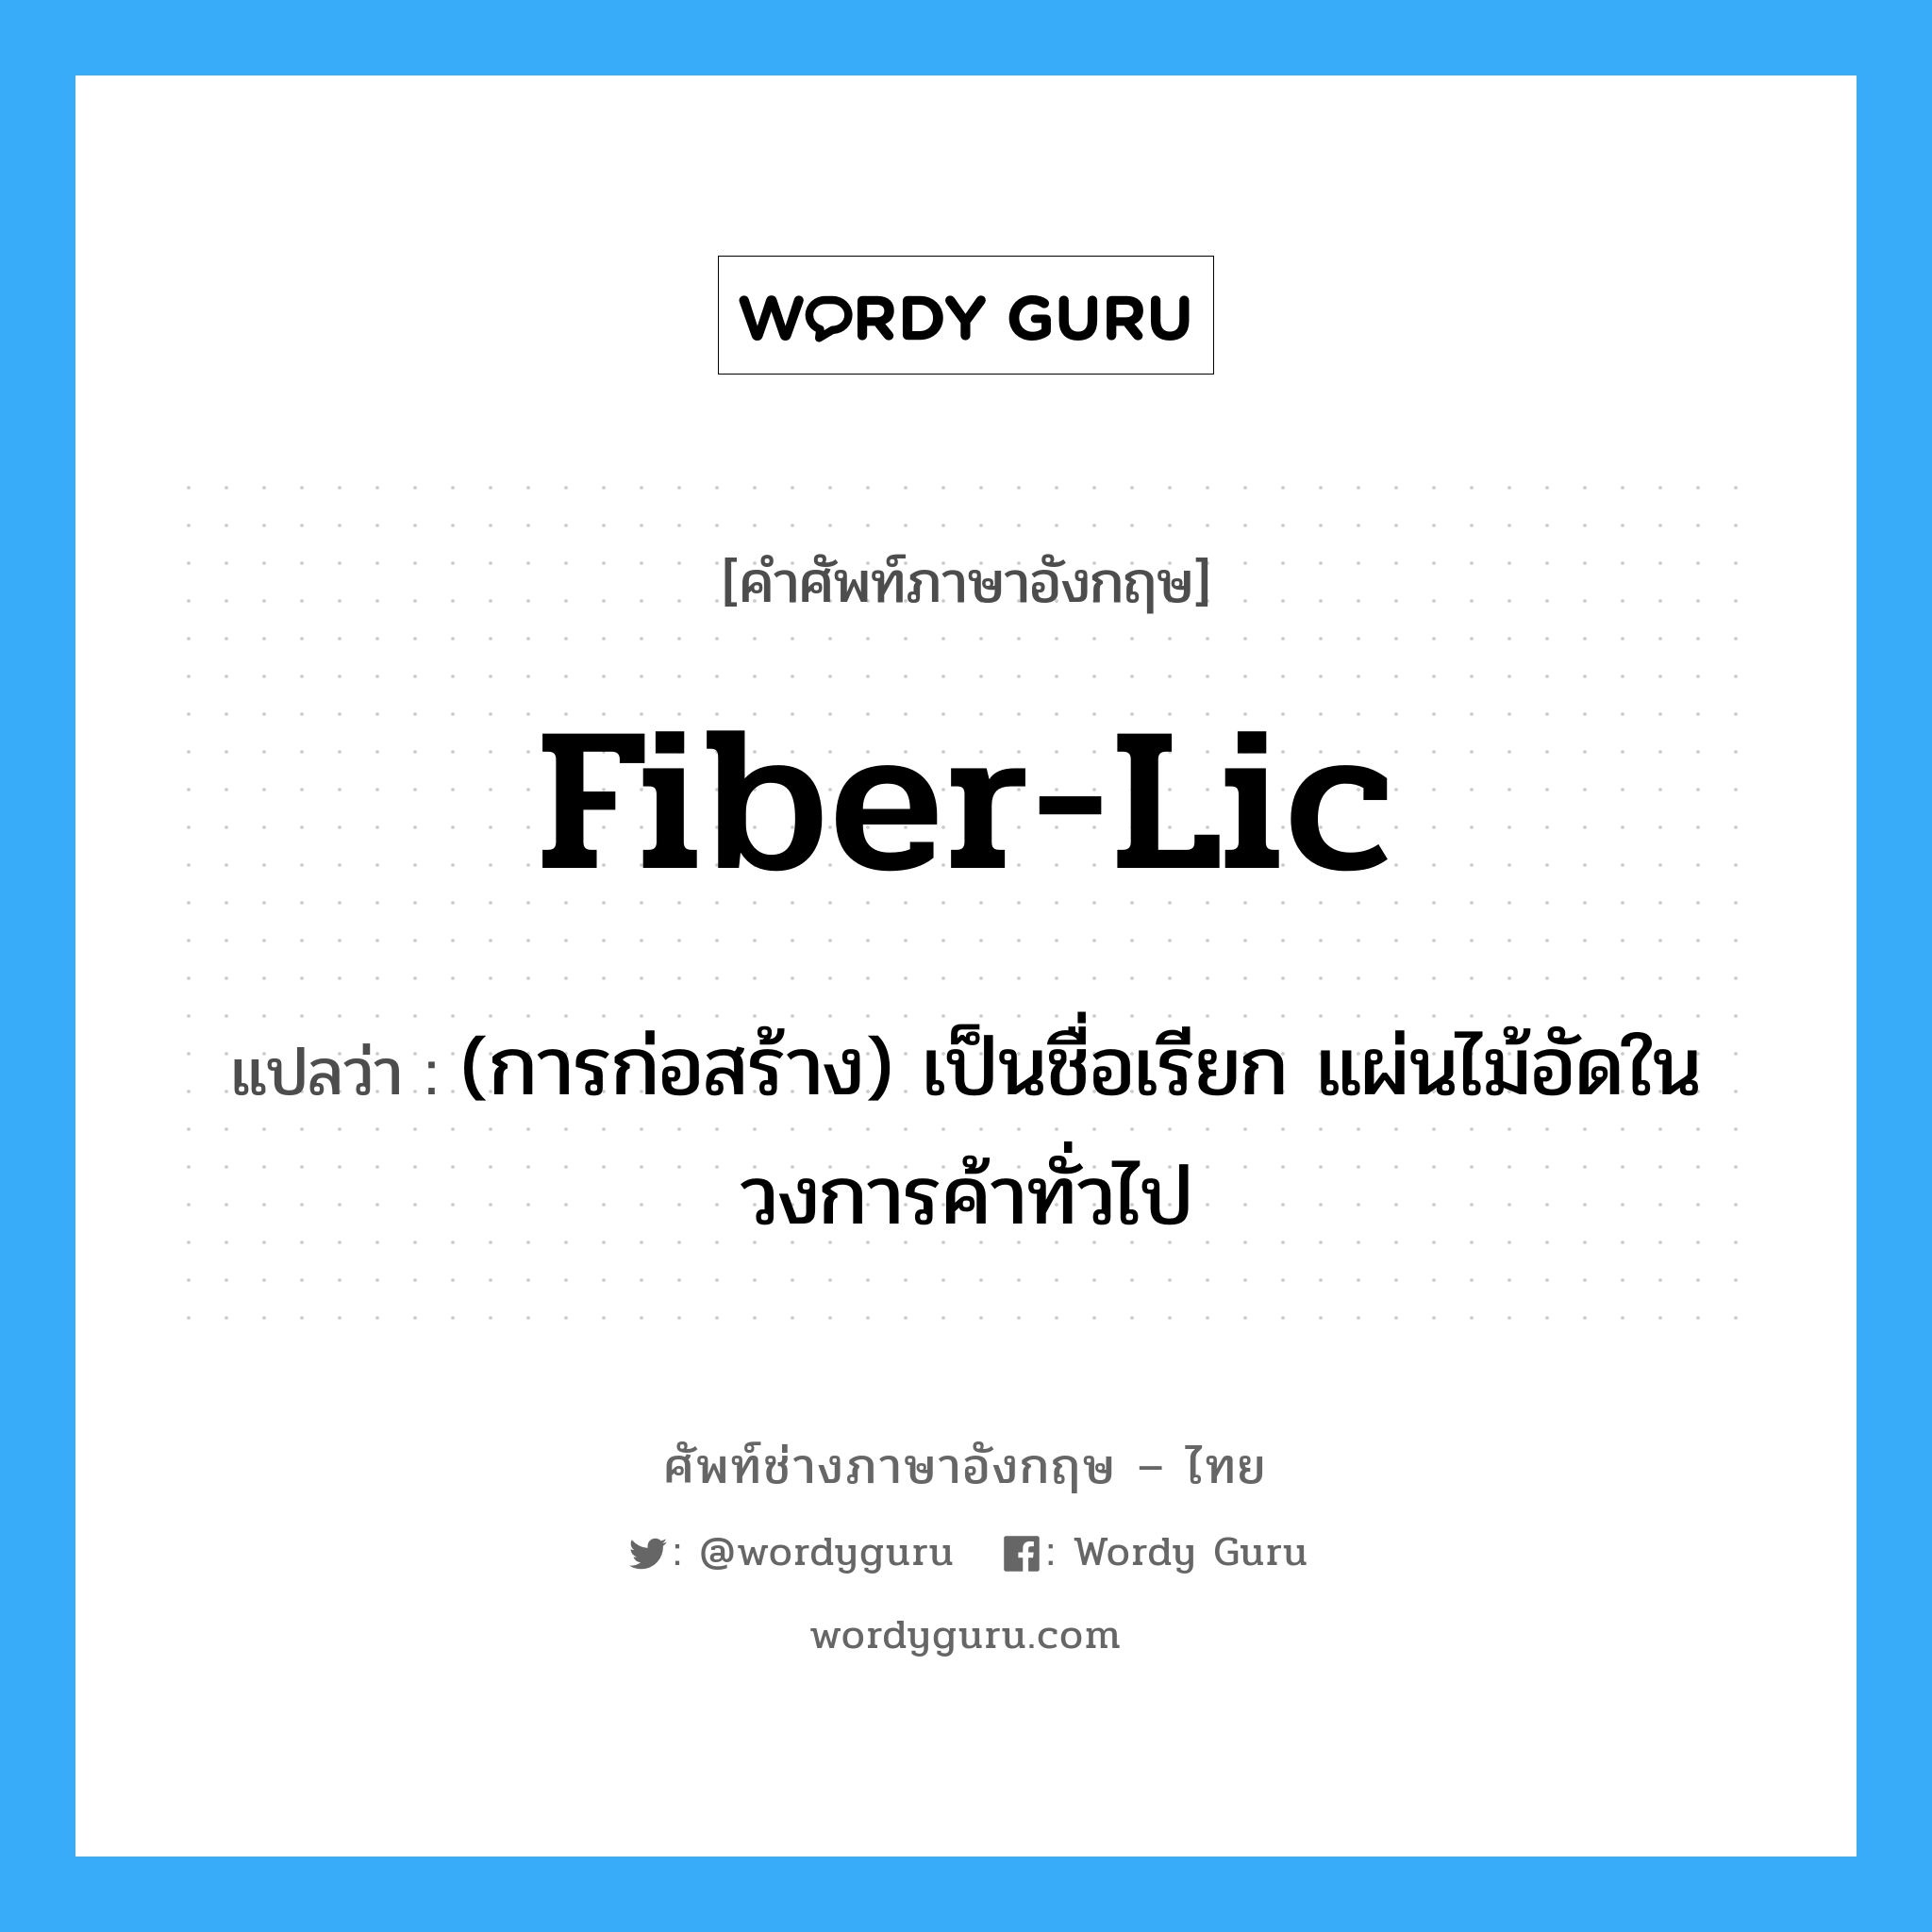 fiber-lic แปลว่า?, คำศัพท์ช่างภาษาอังกฤษ - ไทย fiber-lic คำศัพท์ภาษาอังกฤษ fiber-lic แปลว่า (การก่อสร้าง) เป็นชื่อเรียก แผ่นไม้อัดในวงการค้าทั่วไป